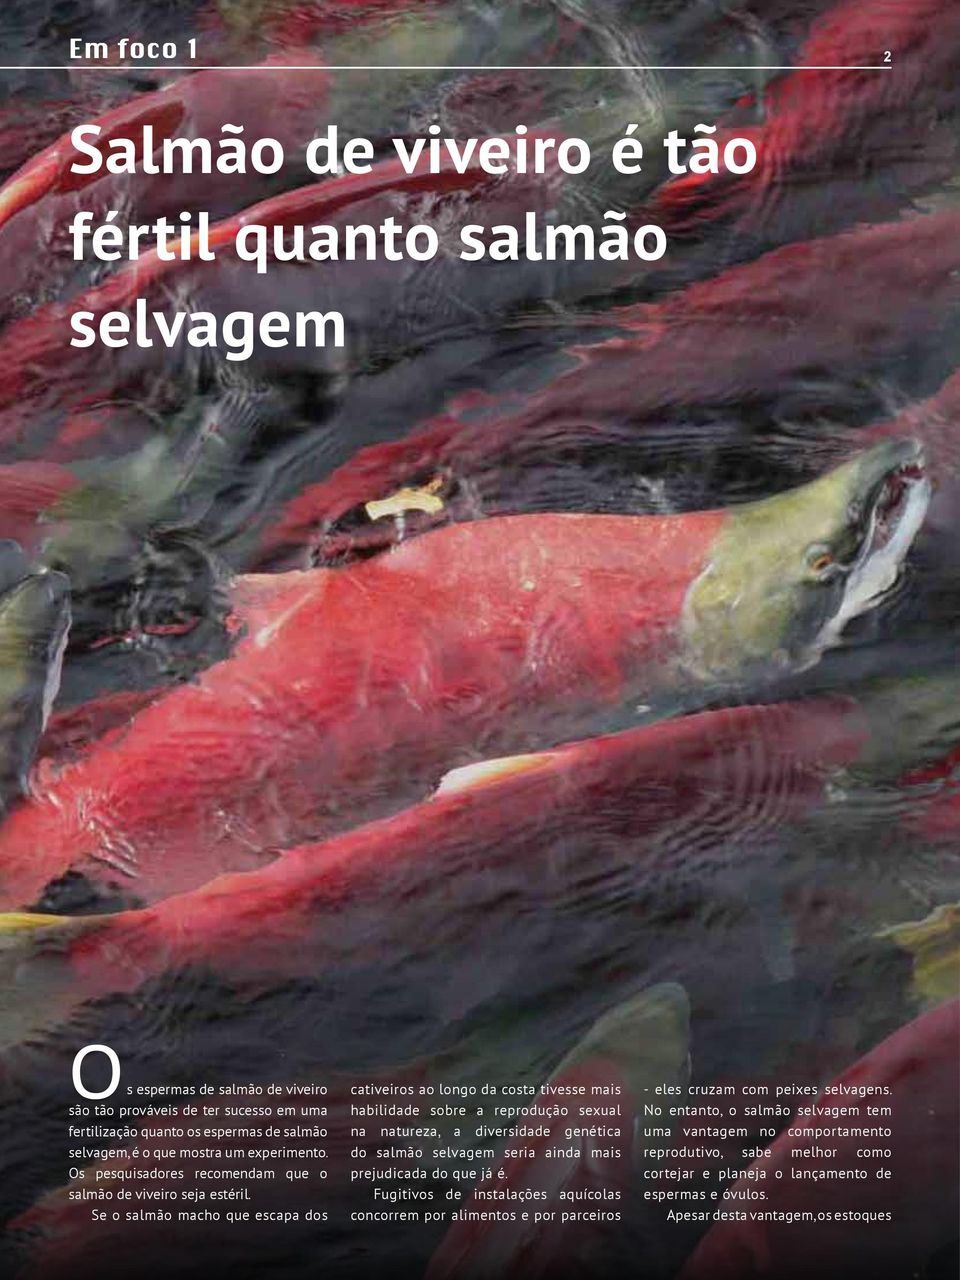 Se o salmão macho que escapa dos cativeiros ao longo da costa tivesse mais habilidade sobre a reprodução sexual na natureza, a diversidade genética do salmão selvagem seria ainda mais